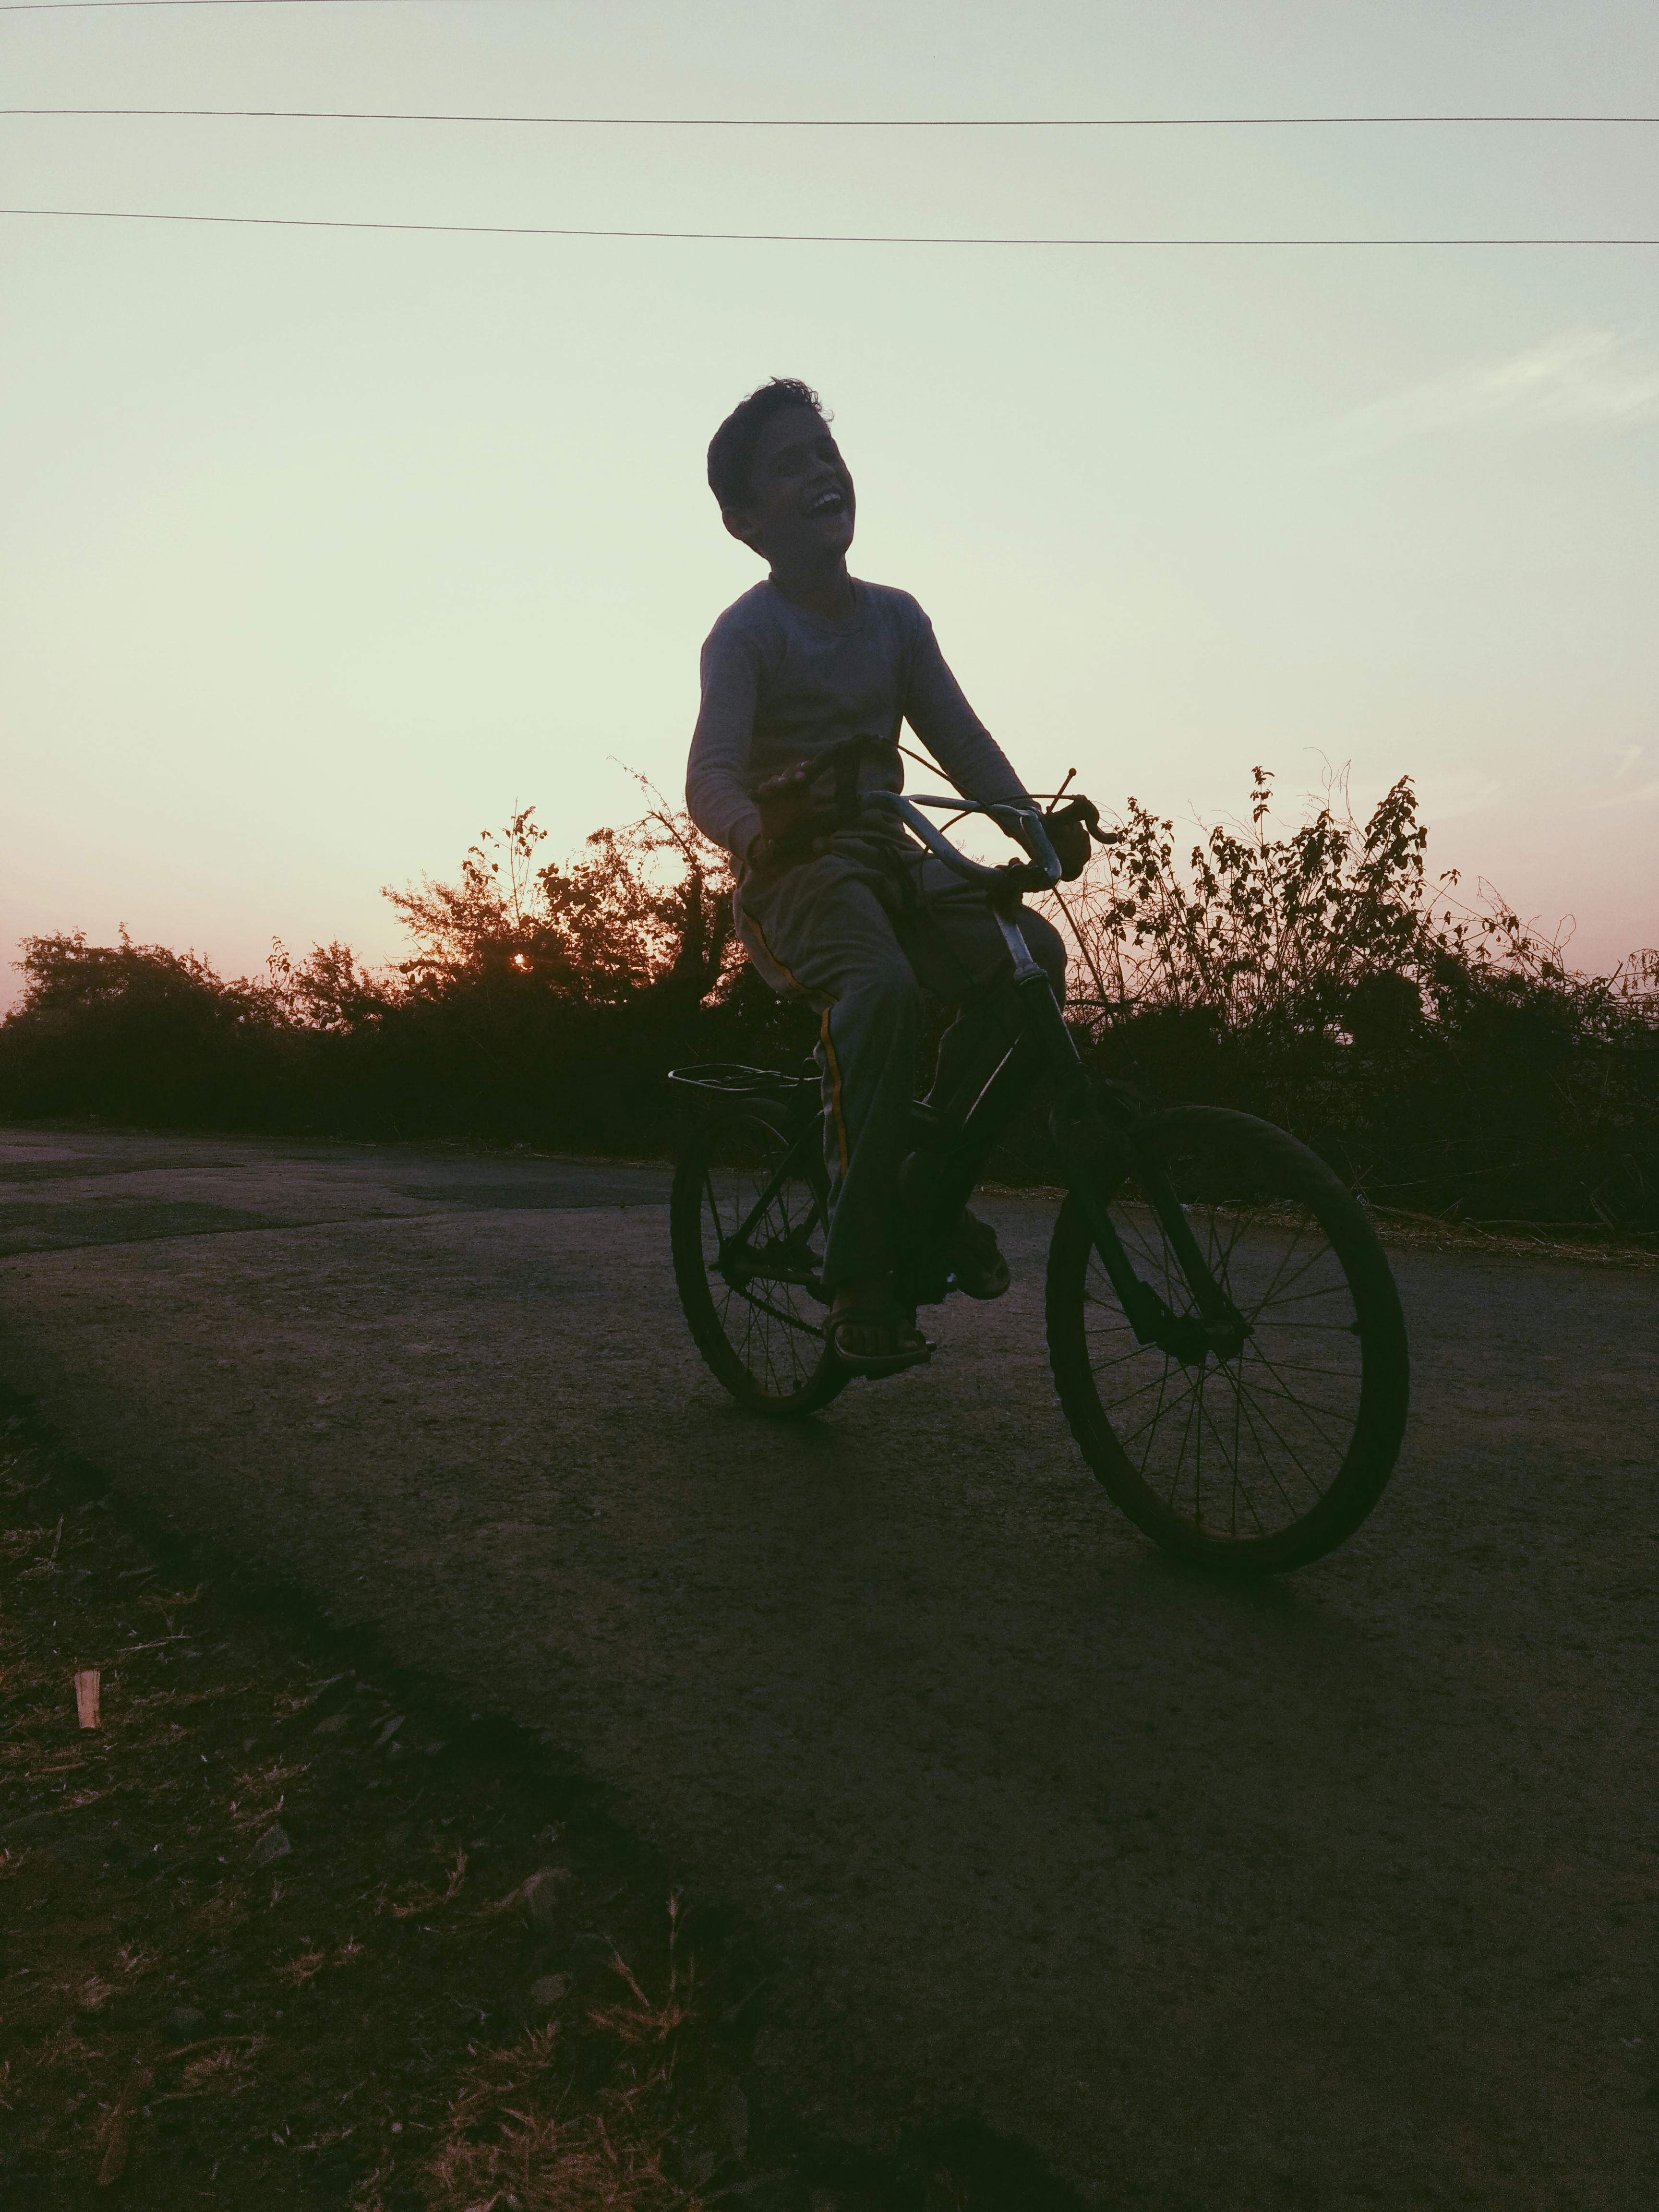 A boy riding a bike. | Source: Pexels